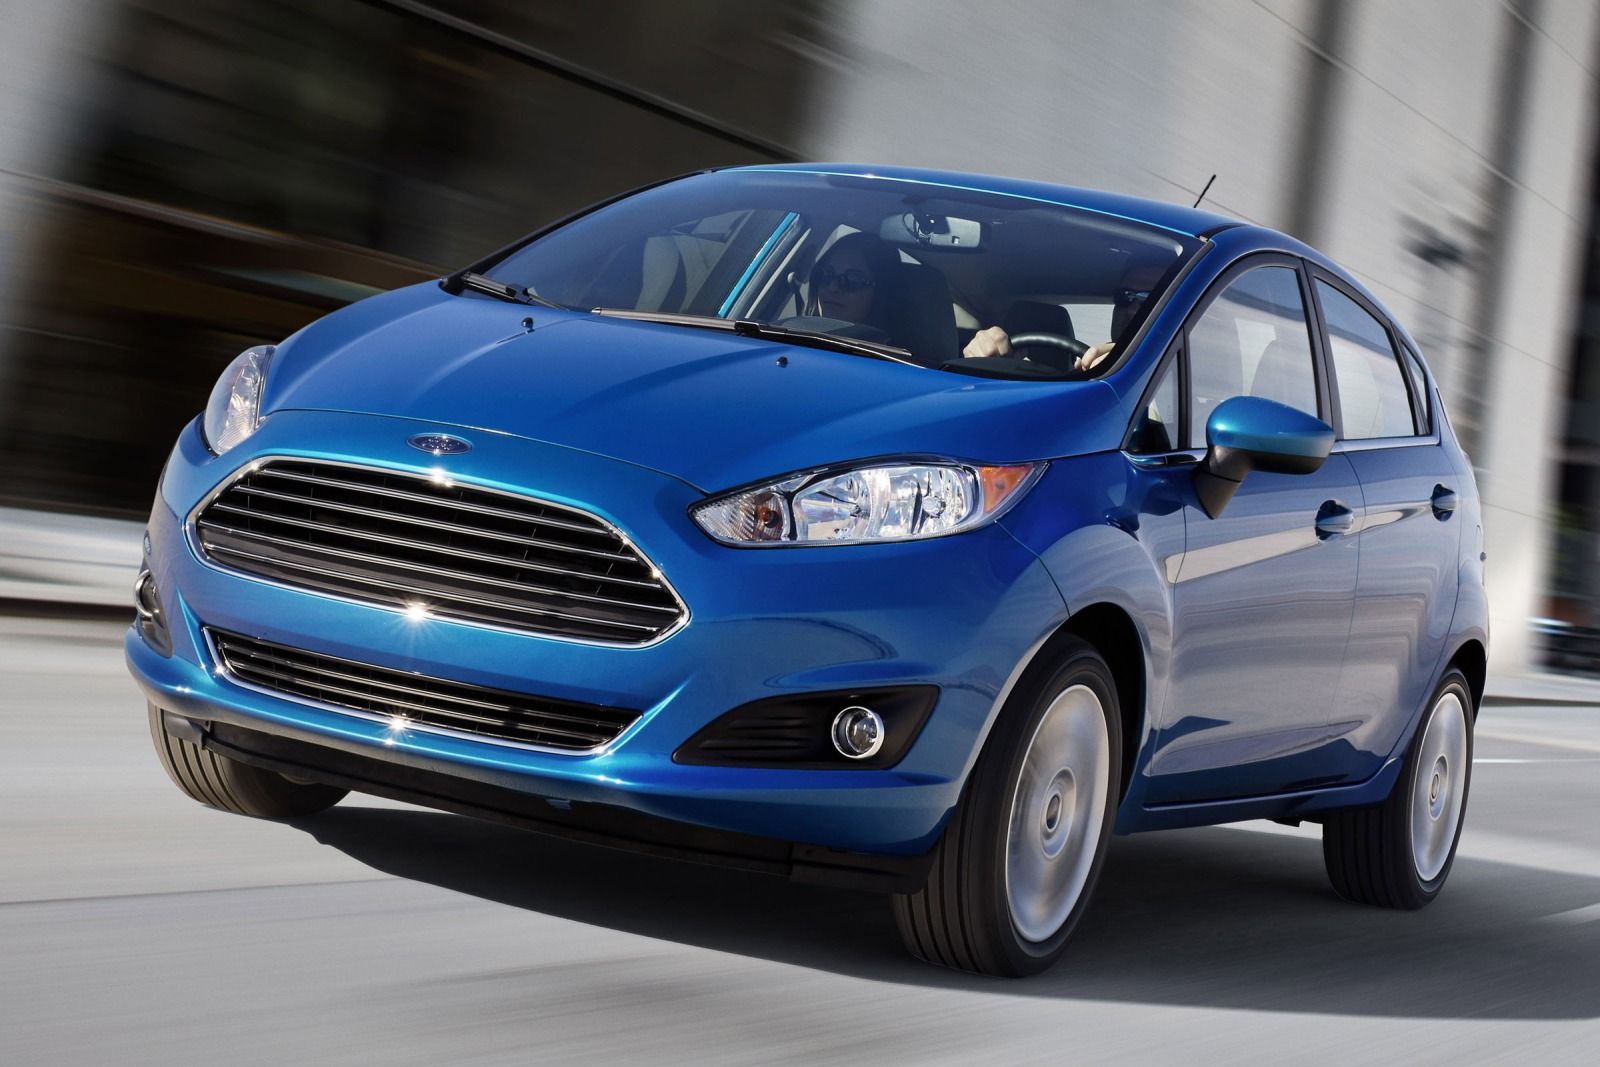 Ford Fiesta mới với trang thiết bị, tiện nghi được thiết kế và bố trí hợp lý